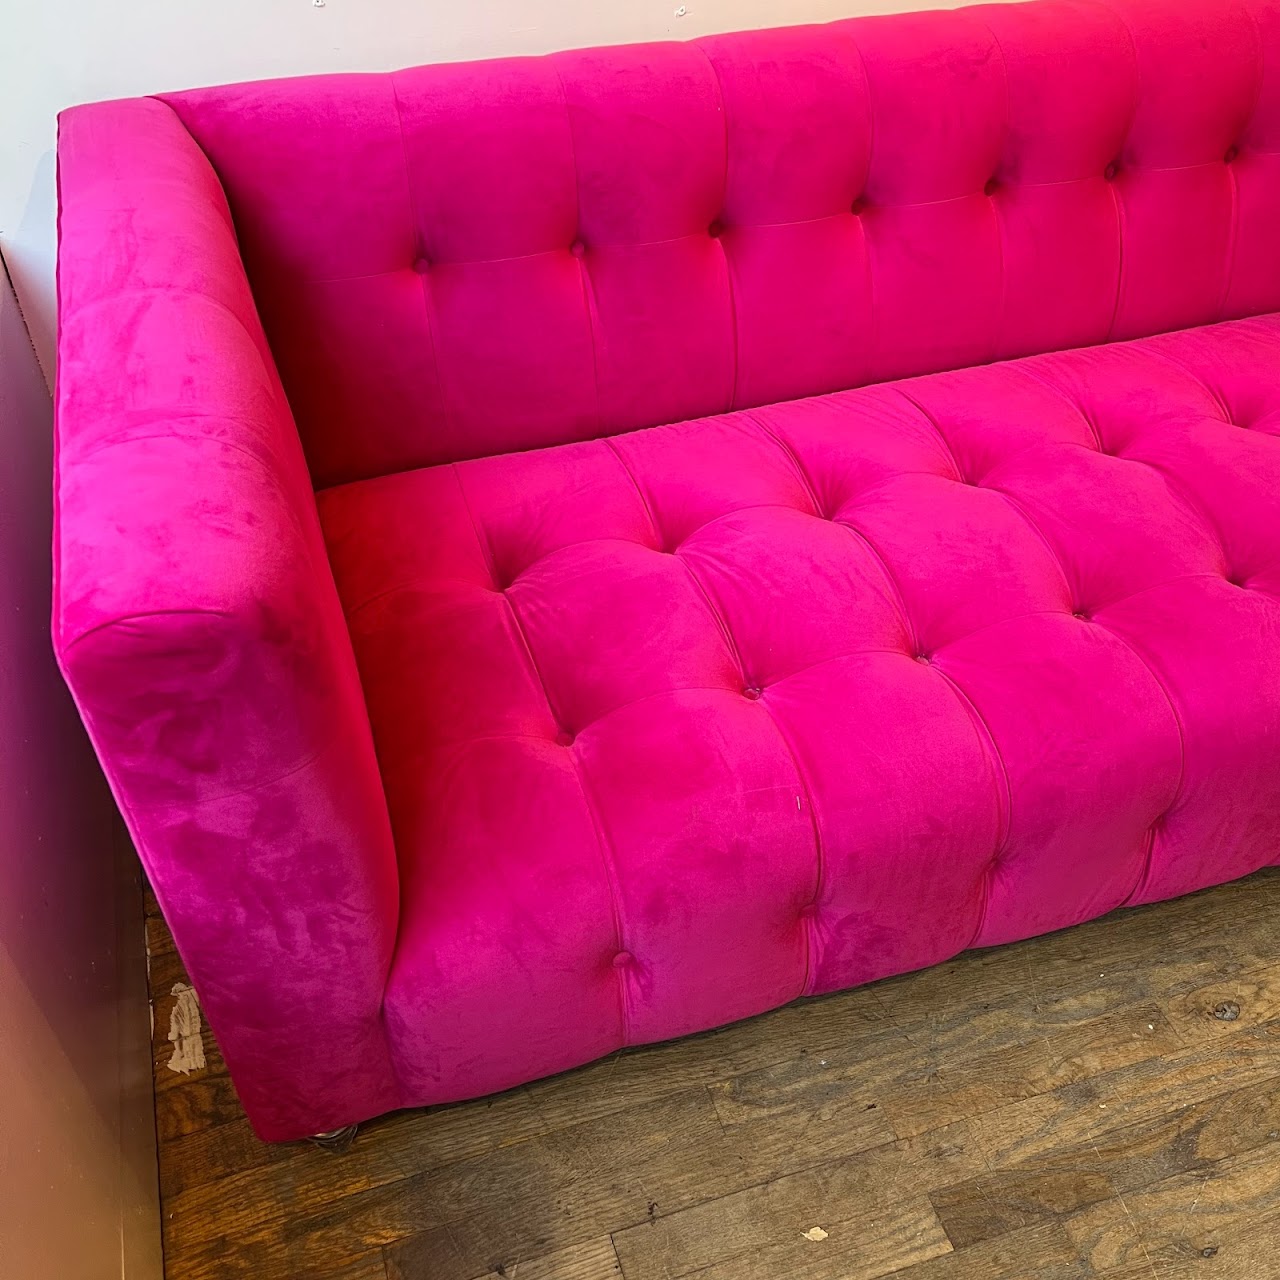 TOV Furniture Bea Hot Pink Velvet Chesterfield Sofa